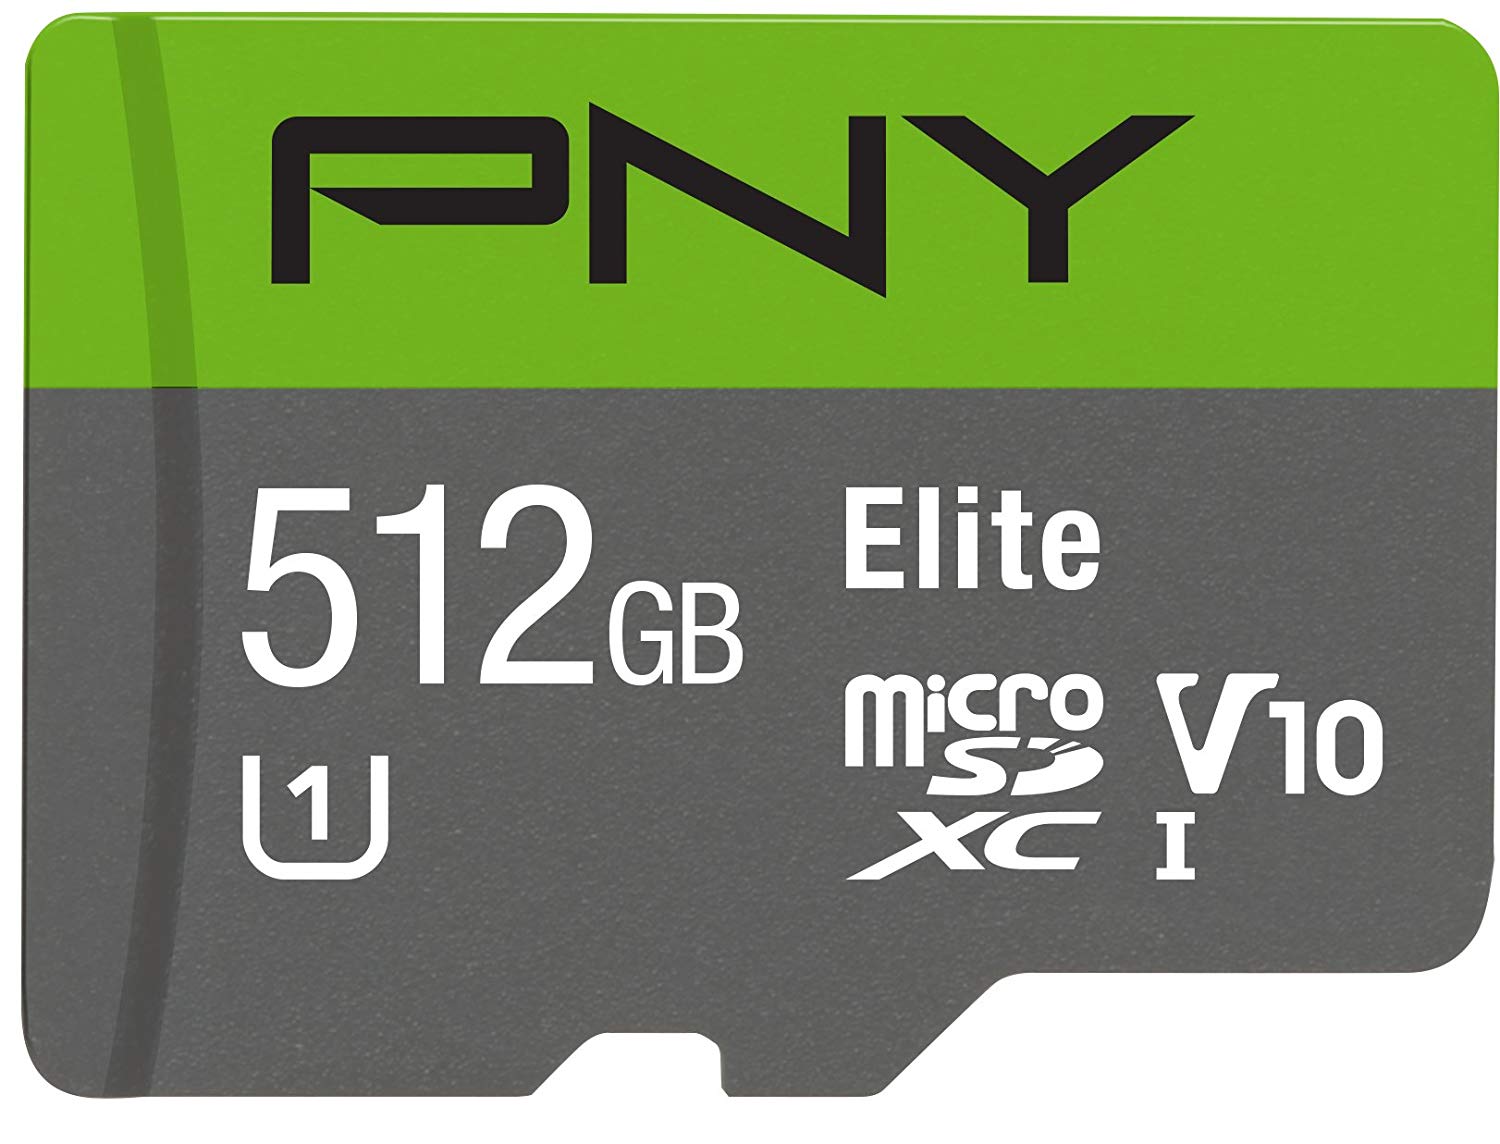 pny-elite-512gb-microsd-card.jpg?itok=Hf